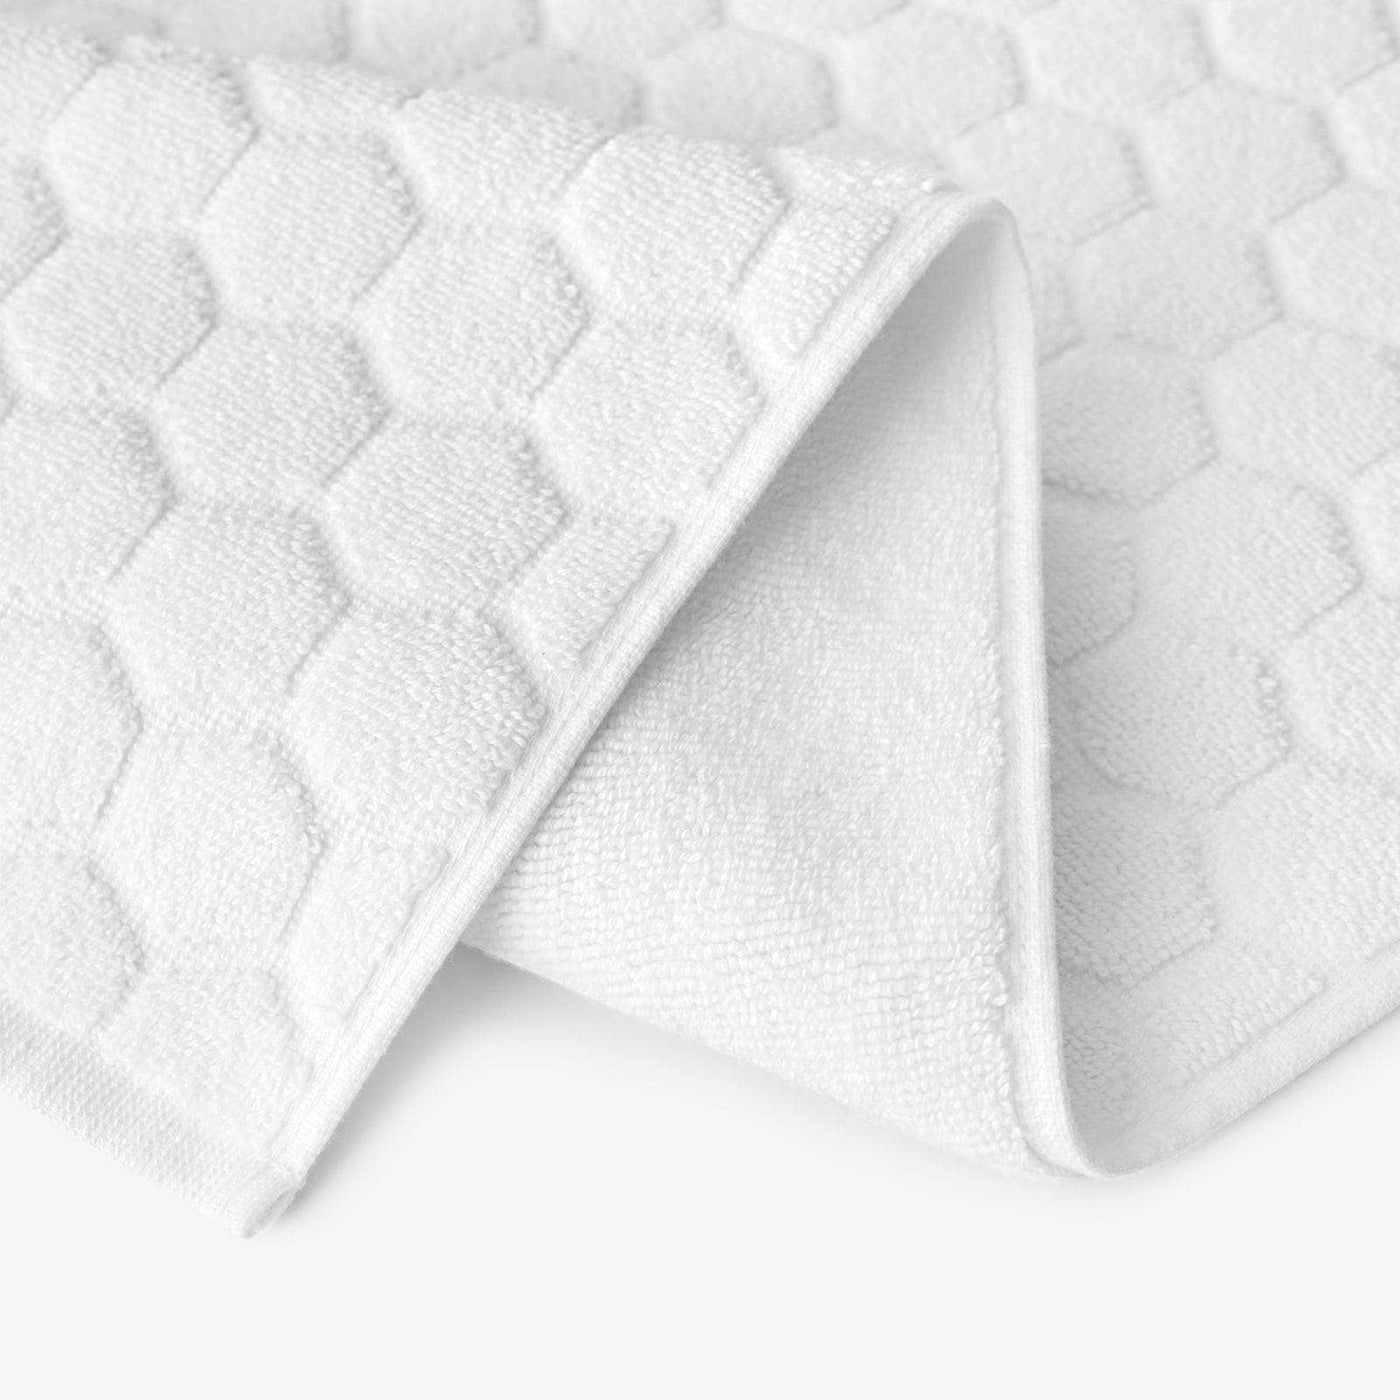 Gary Textured 100% Turkish Cotton Bath Mat, White, 50x80 cm 3